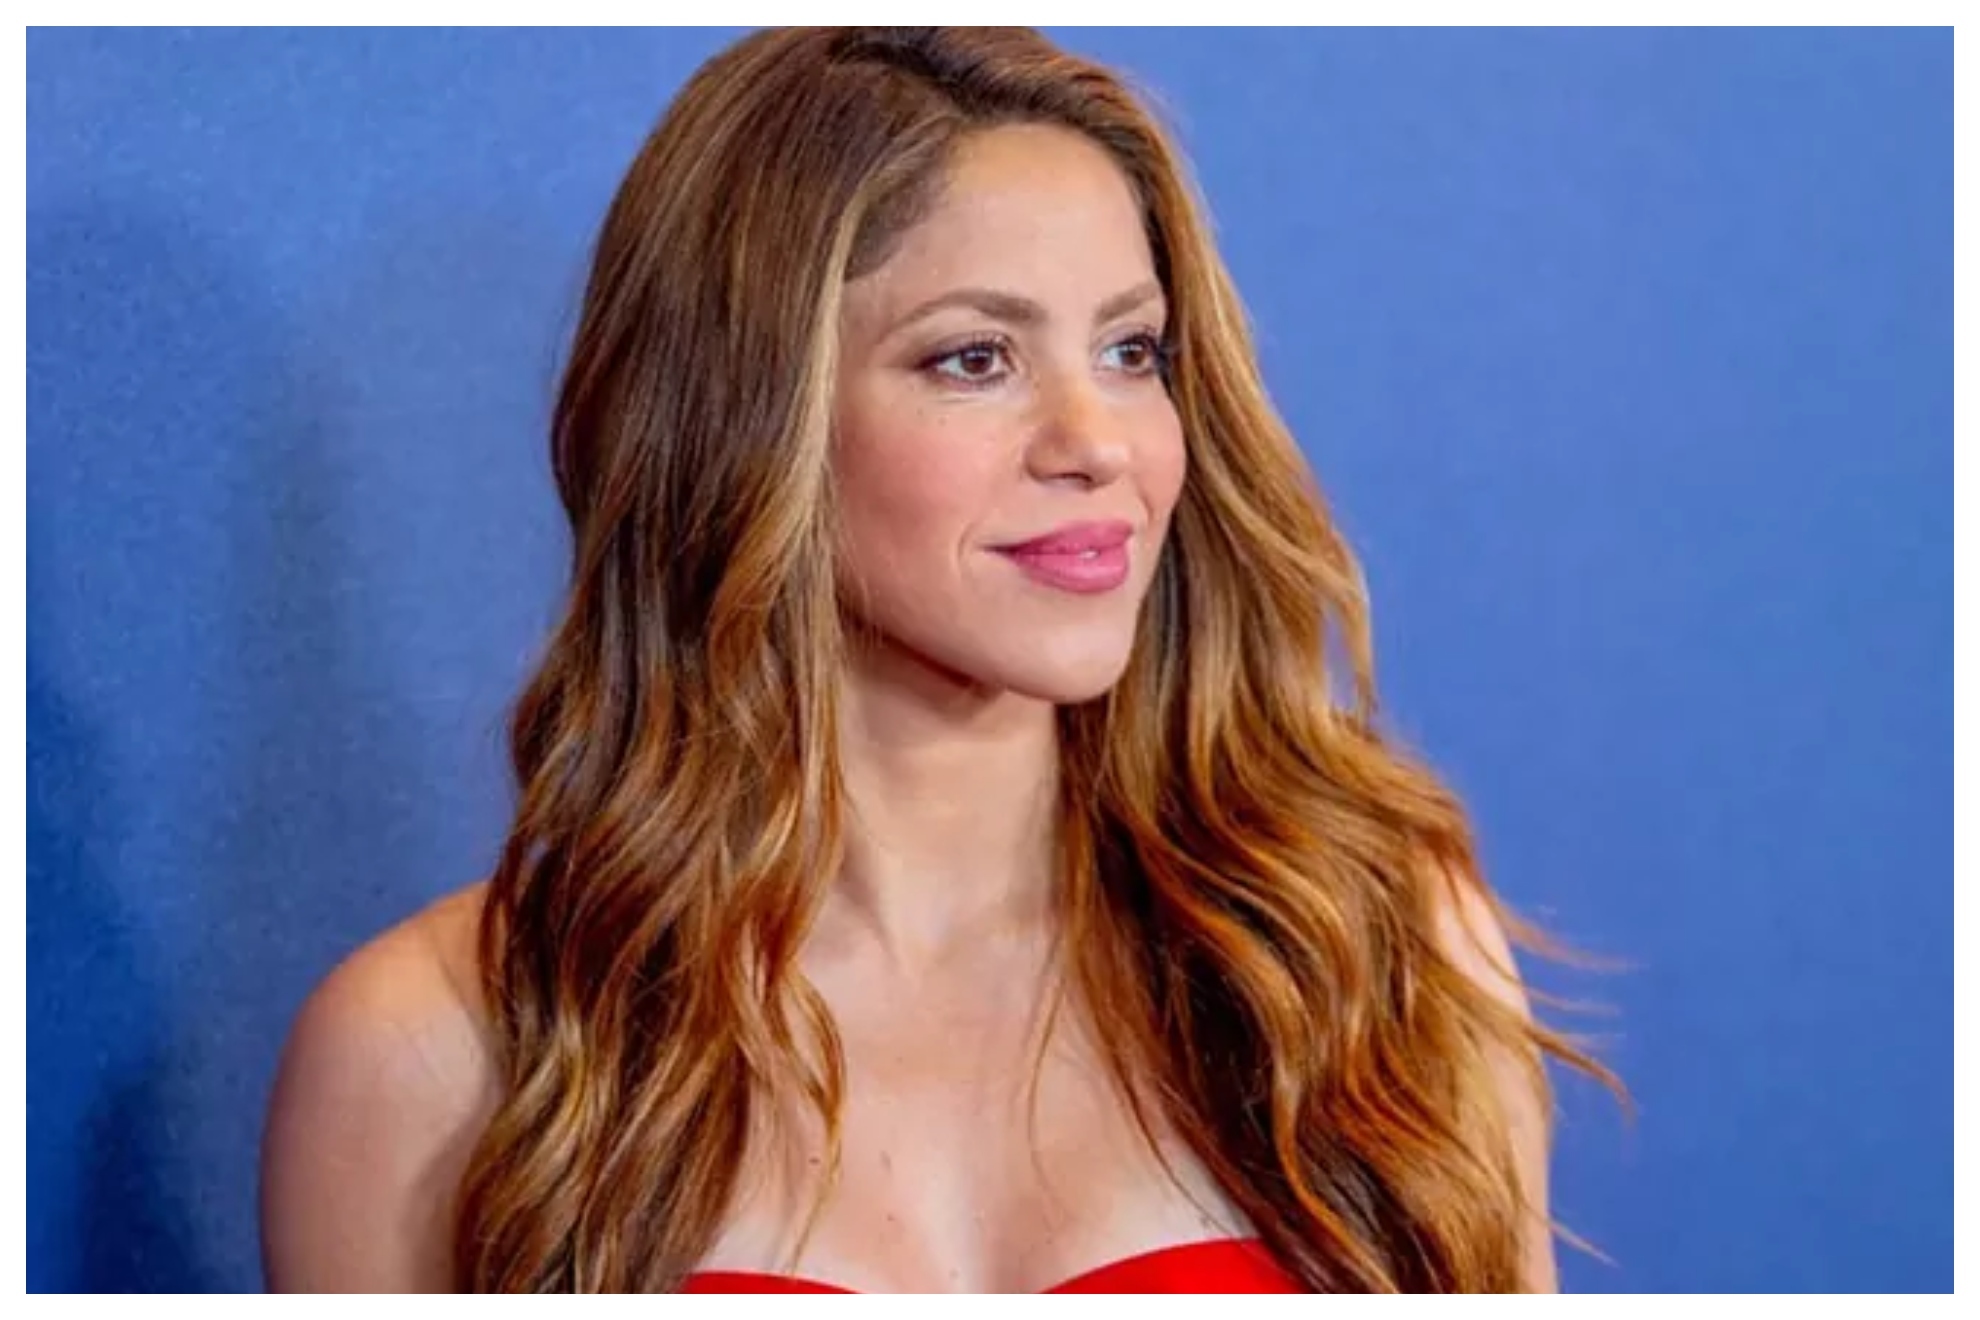 ¿Por qué Shakira se ha visto obligada a abandonar España de manera precipitada?